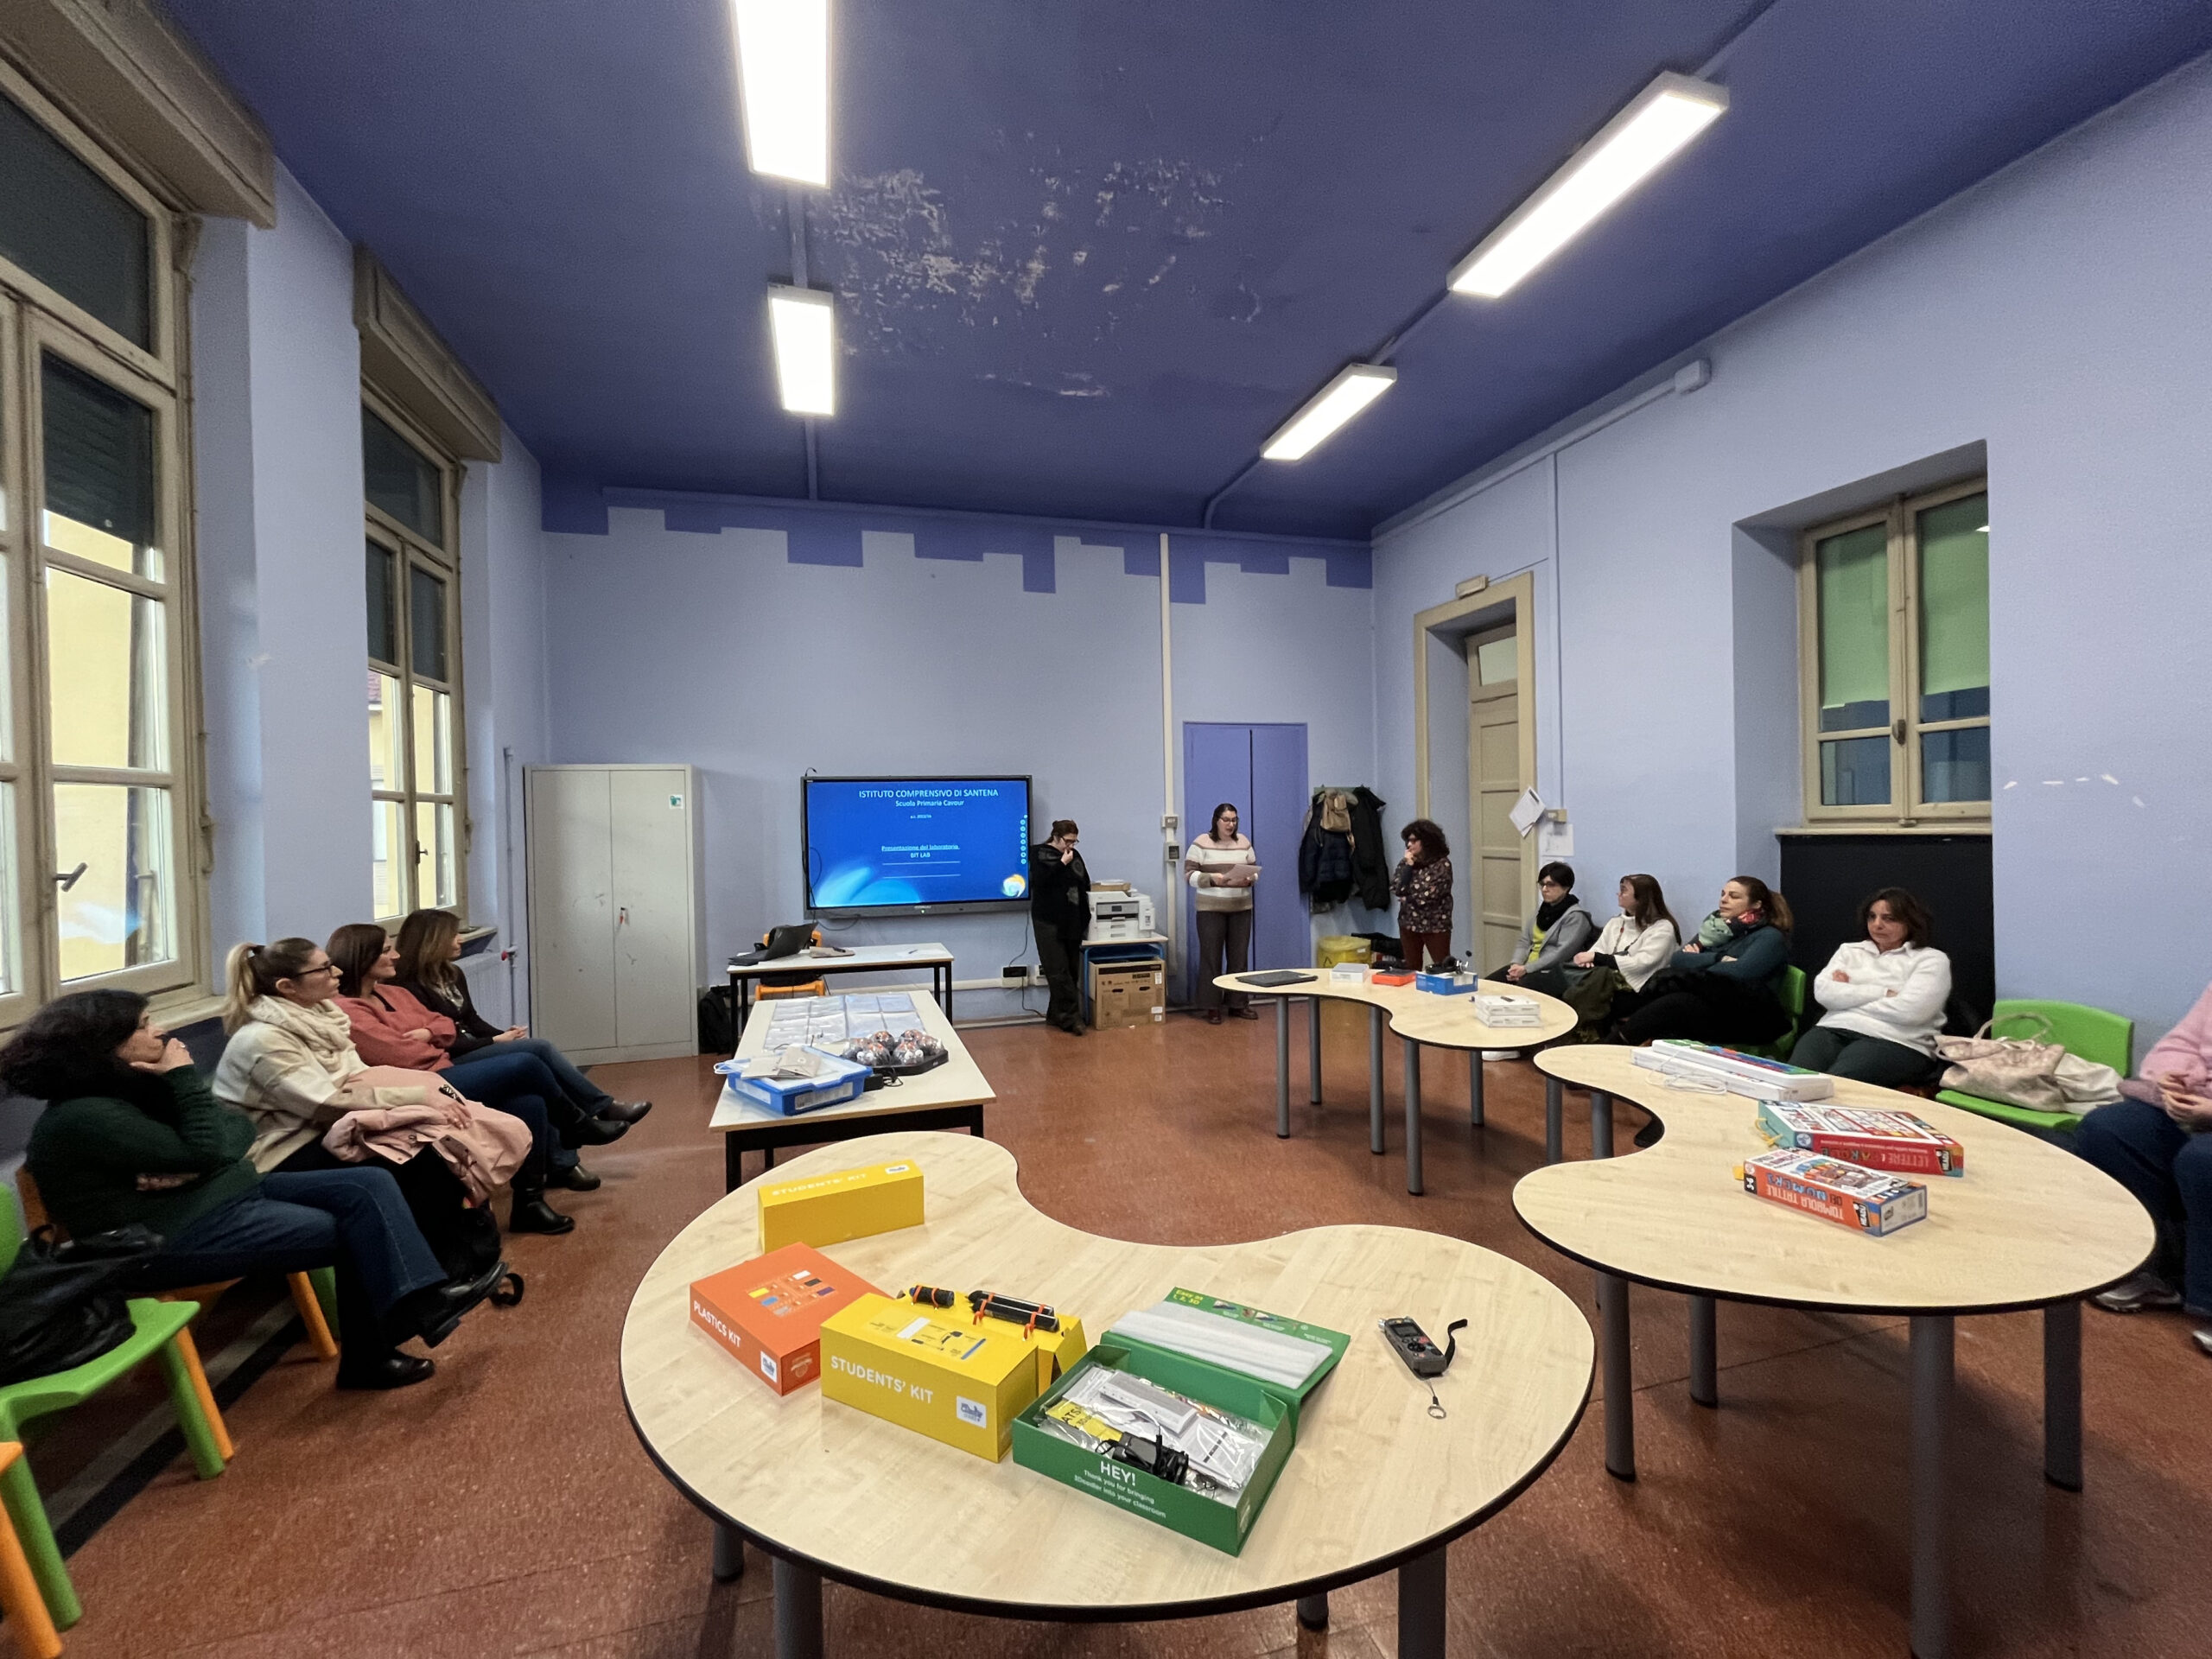 Il laboratorio di informatica sito al secondo piano dell'edifico delle elementari Camillo Cavour. Immagine di archivio